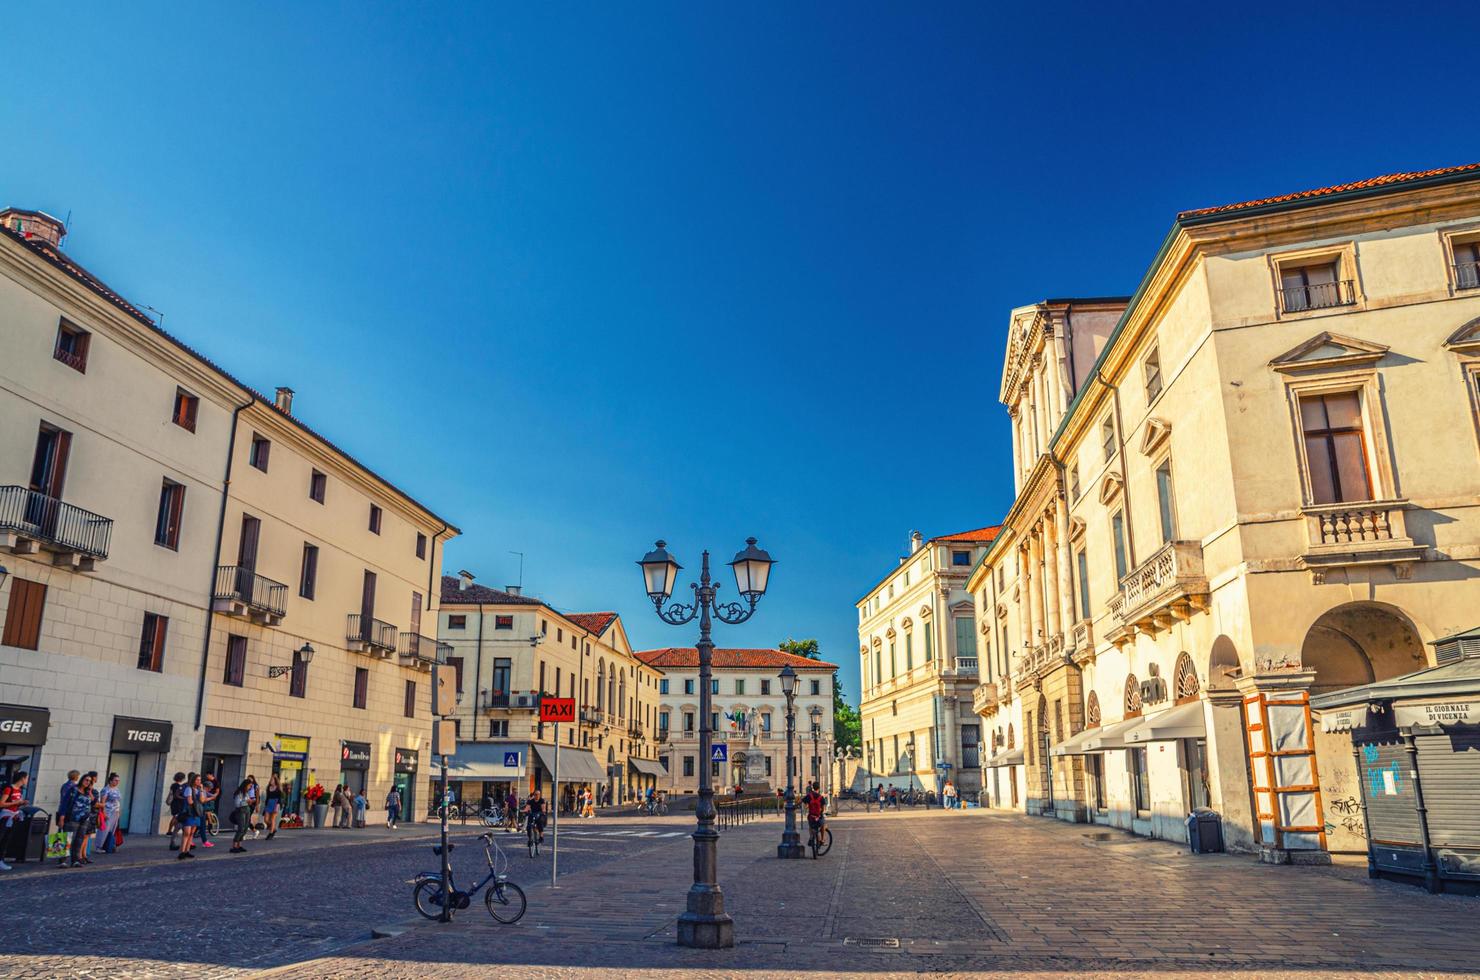 Vicenza, Italy building and street light in Piazza del Castello cobblestone square photo